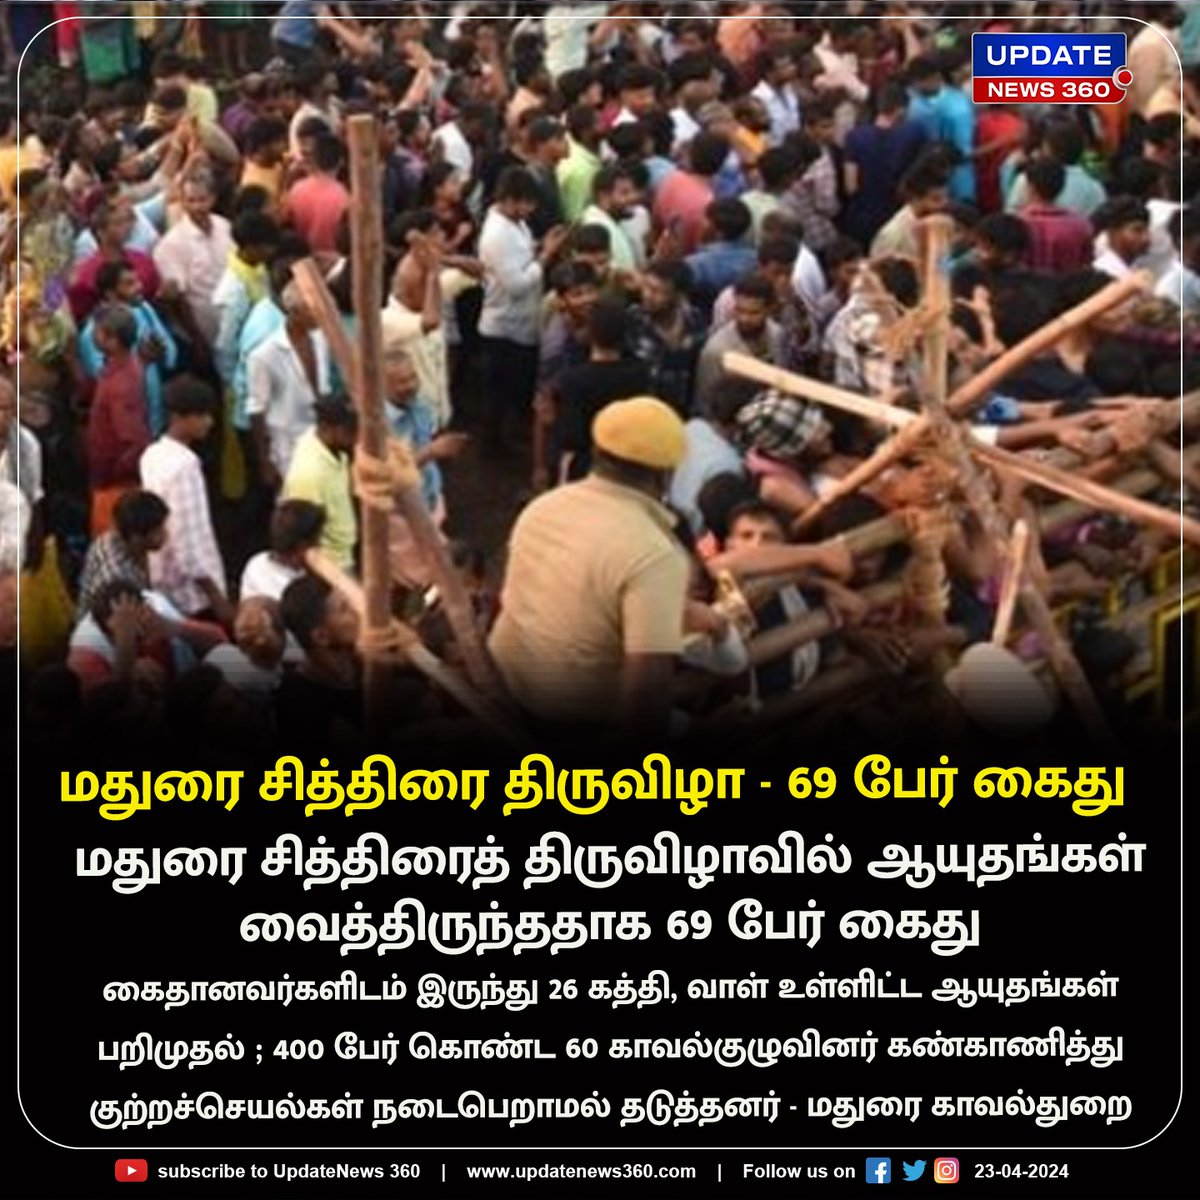 மதுரை சித்திரைத் திருவிழாவில் ஆயுதங்கள் வைத்திருந்ததாக 69 பேர் கைது

#UpdateNews | #Madurai | #VaigaiRiver | #Kallazhagar | #ChithiraiFestival | #ChithiraiThiruvizha2024 | #Arrested | #TamilNews | #Updatenews360